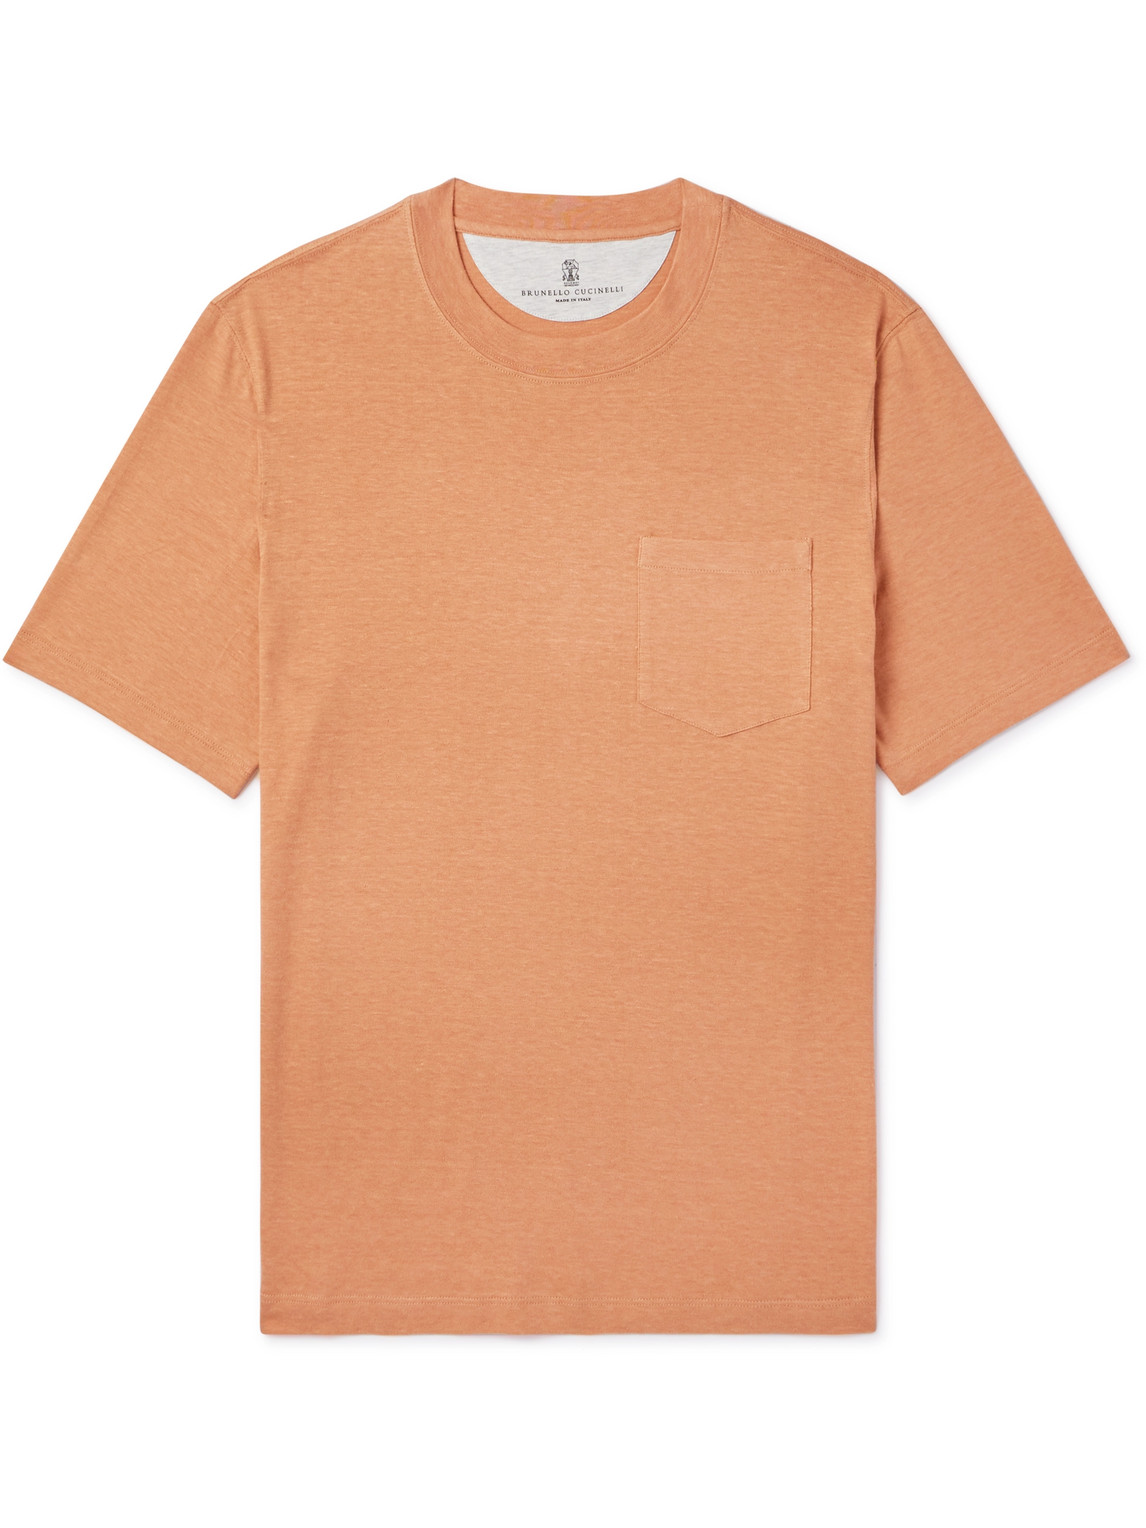 Brunello Cucinelli - Linen and Cotton-Blend Jersey T-Shirt - Men - Orange - XXXL von Brunello Cucinelli